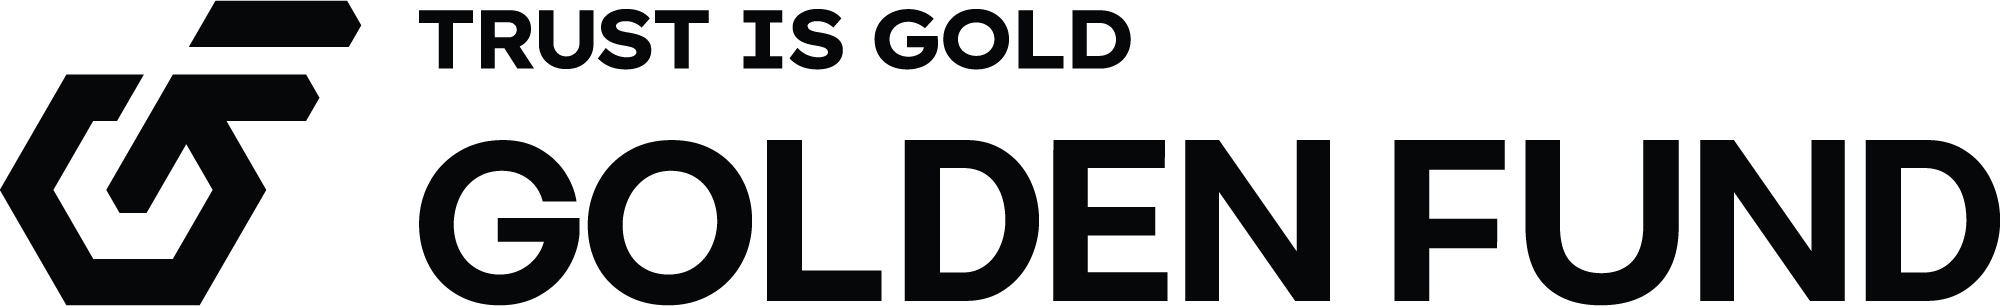 Golden Fund